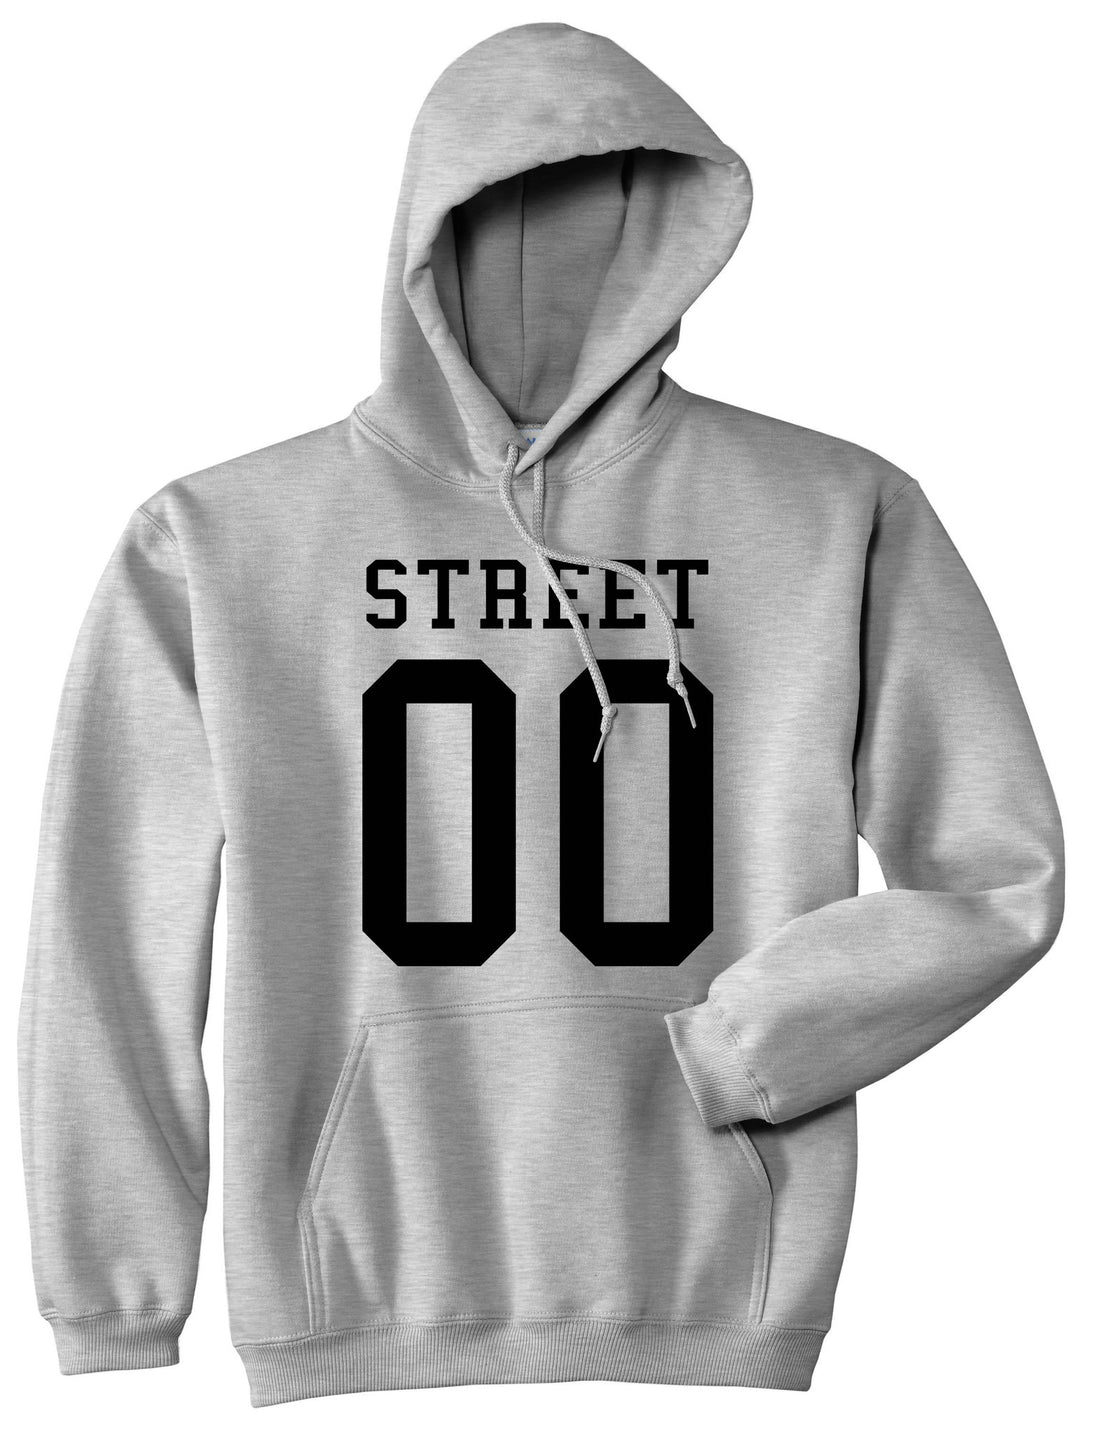 Street Team 00 Jersey Boys Kids Pullover Hoodie Hoody in Grey By Kings Of NY